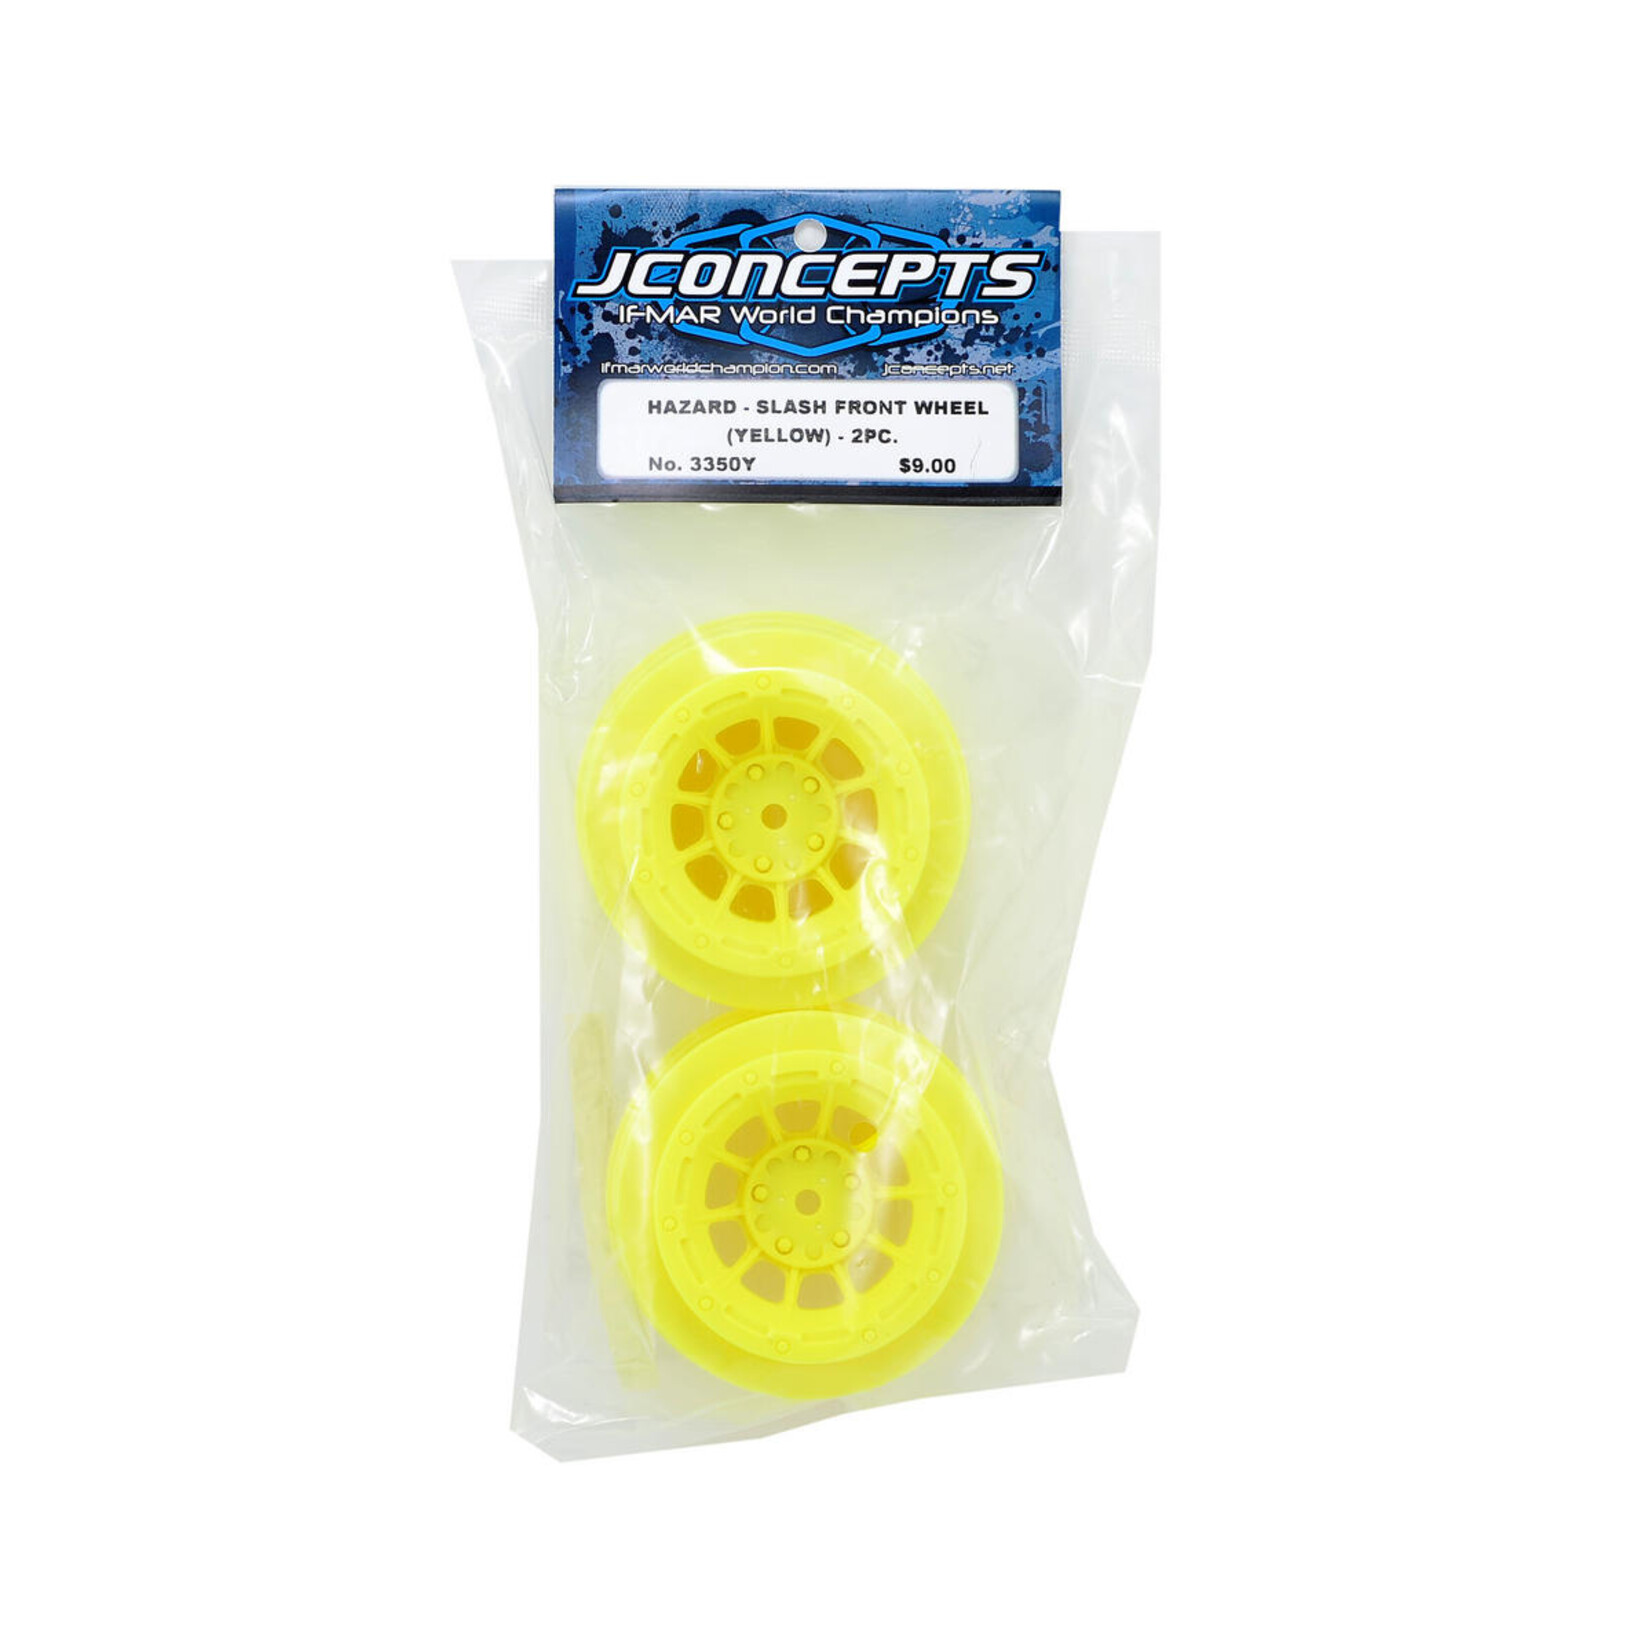 JConcepts JConcepts 12mm Hex Hazard Short Course Wheels (Yellow) (2) (Slash Front) #3350Y